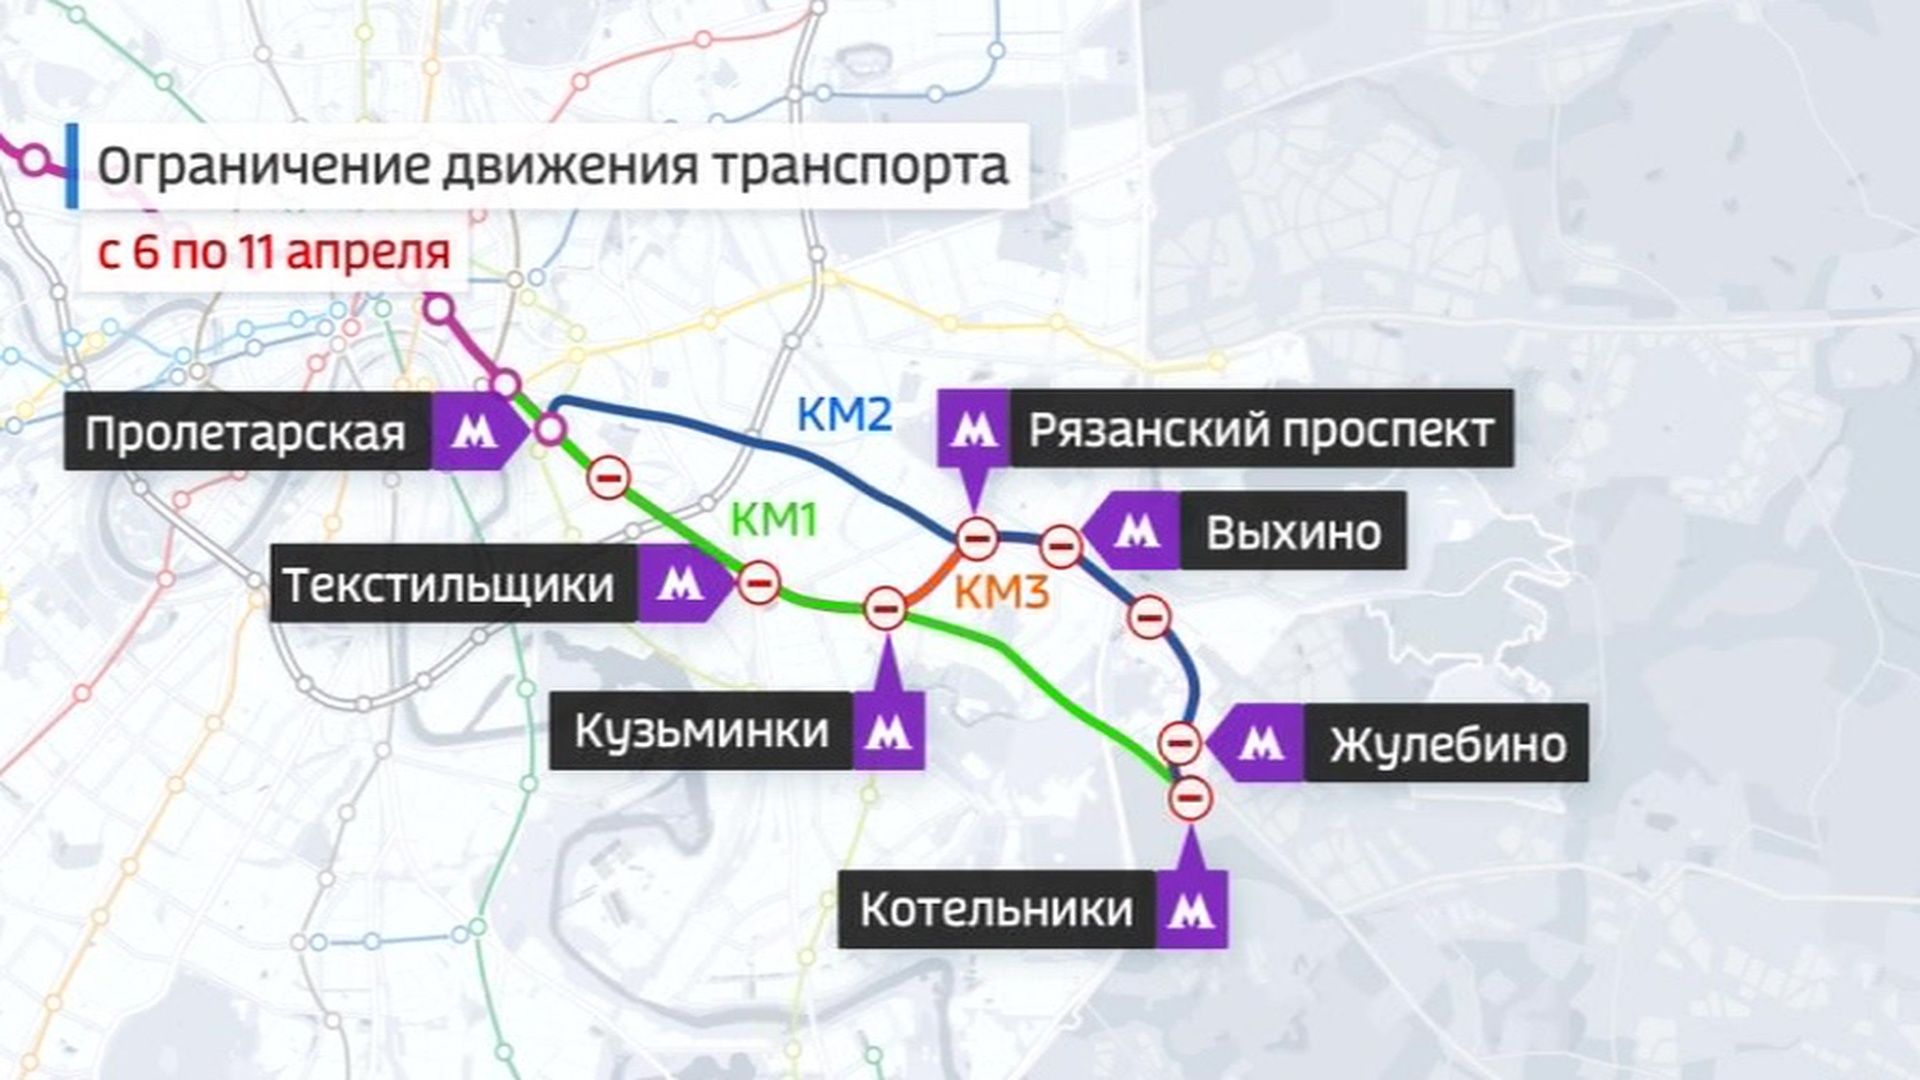 розовая ветка метро москвы